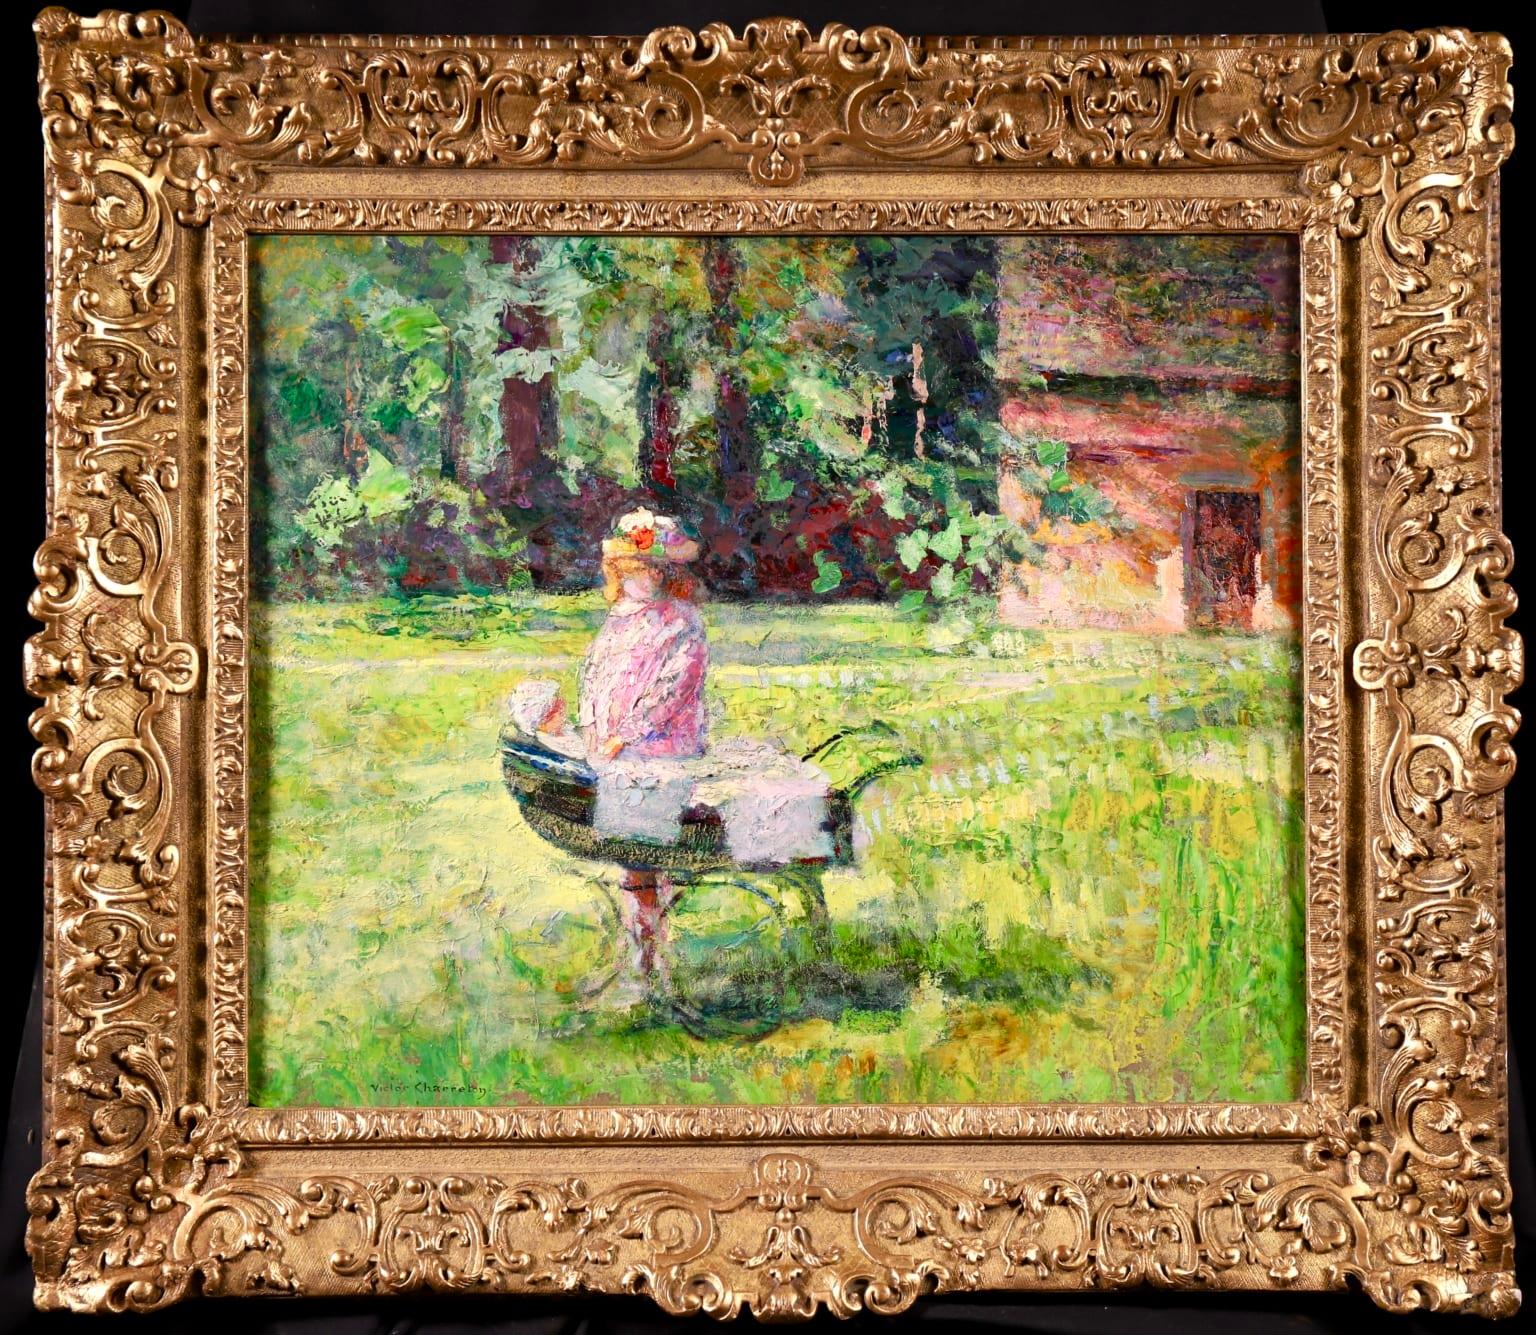 Figure dans un paysage signé, huile sur carton vers 1910 par le célèbre peintre post-impressionniste français Victor Charreton. Cette charmante pièce représente une jeune fille en robe et chapeau roses jouant avec une poupée dans un landau. Elle se